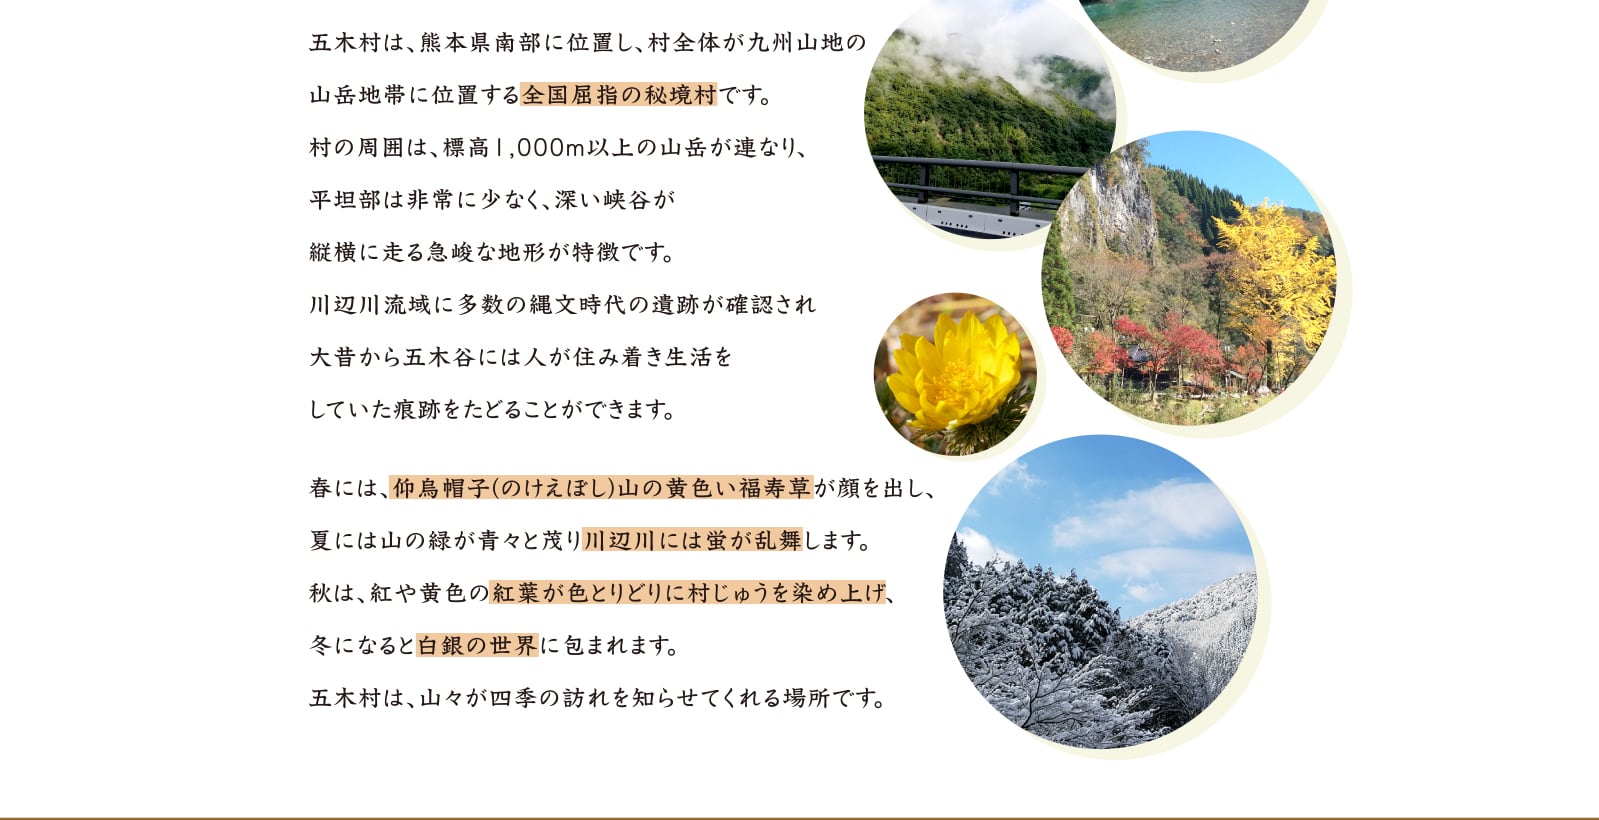 五木村は、熊本県南部に位置し、村全体が九州山地の山岳地帯に位置する全国屈指の秘境村です。村の周囲は、標高1,000m以上の山岳が連なり、平坦部は非常に少なく、深い峡谷が縦横に走る急峻な地形が特徴です。